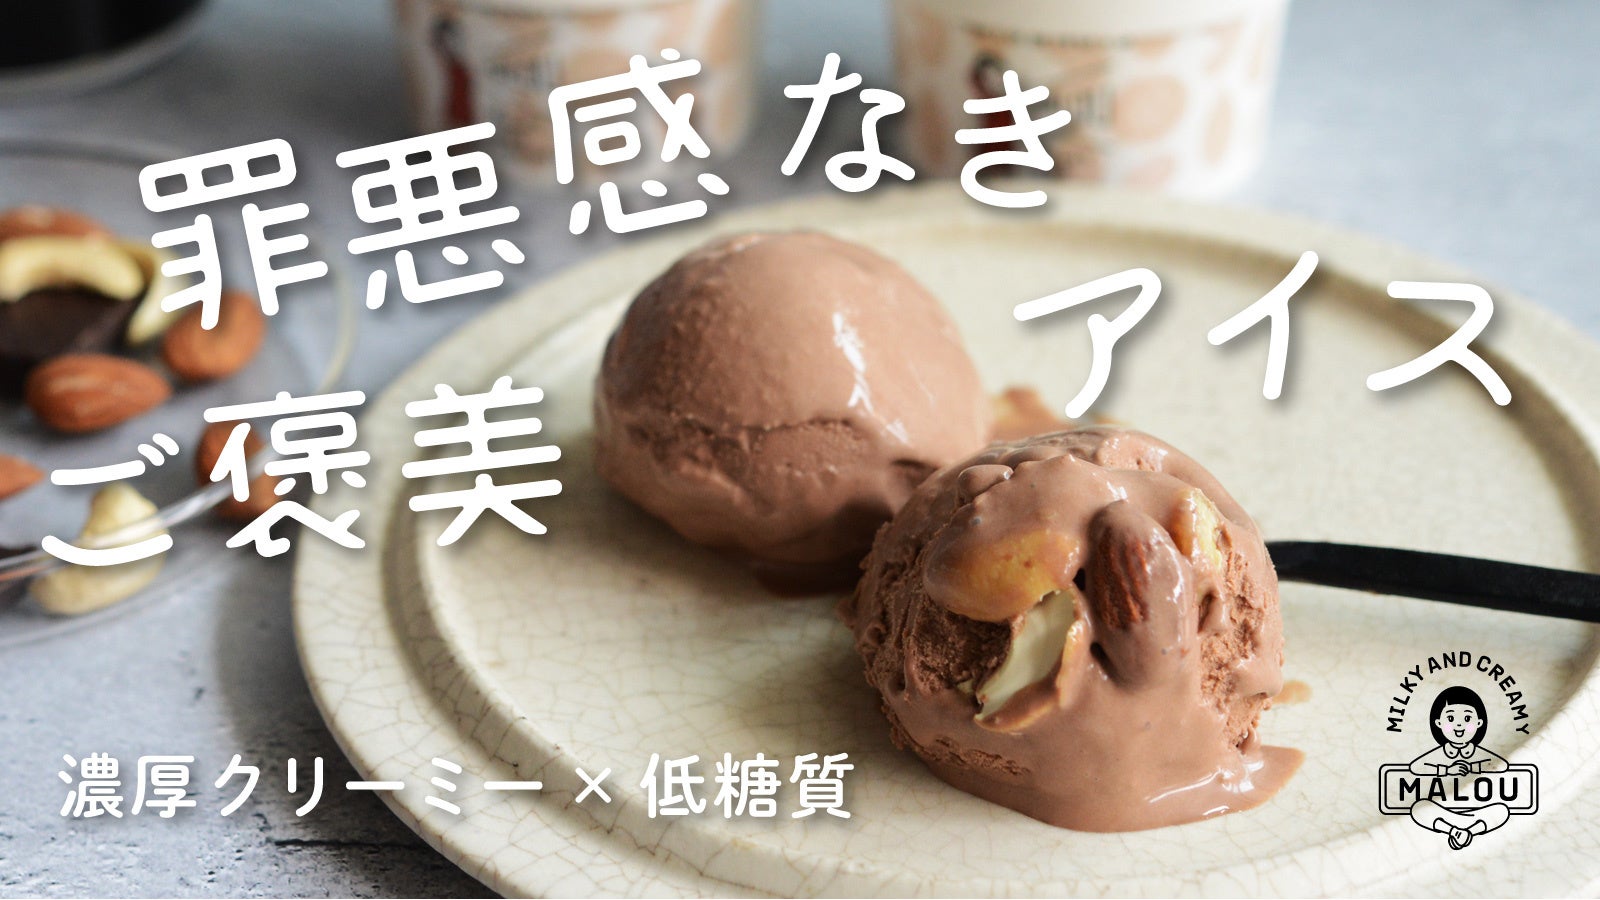 罪悪感なきご褒美アイスクリーム「MALOU」、4/28からMakuakeにて先行予約販売